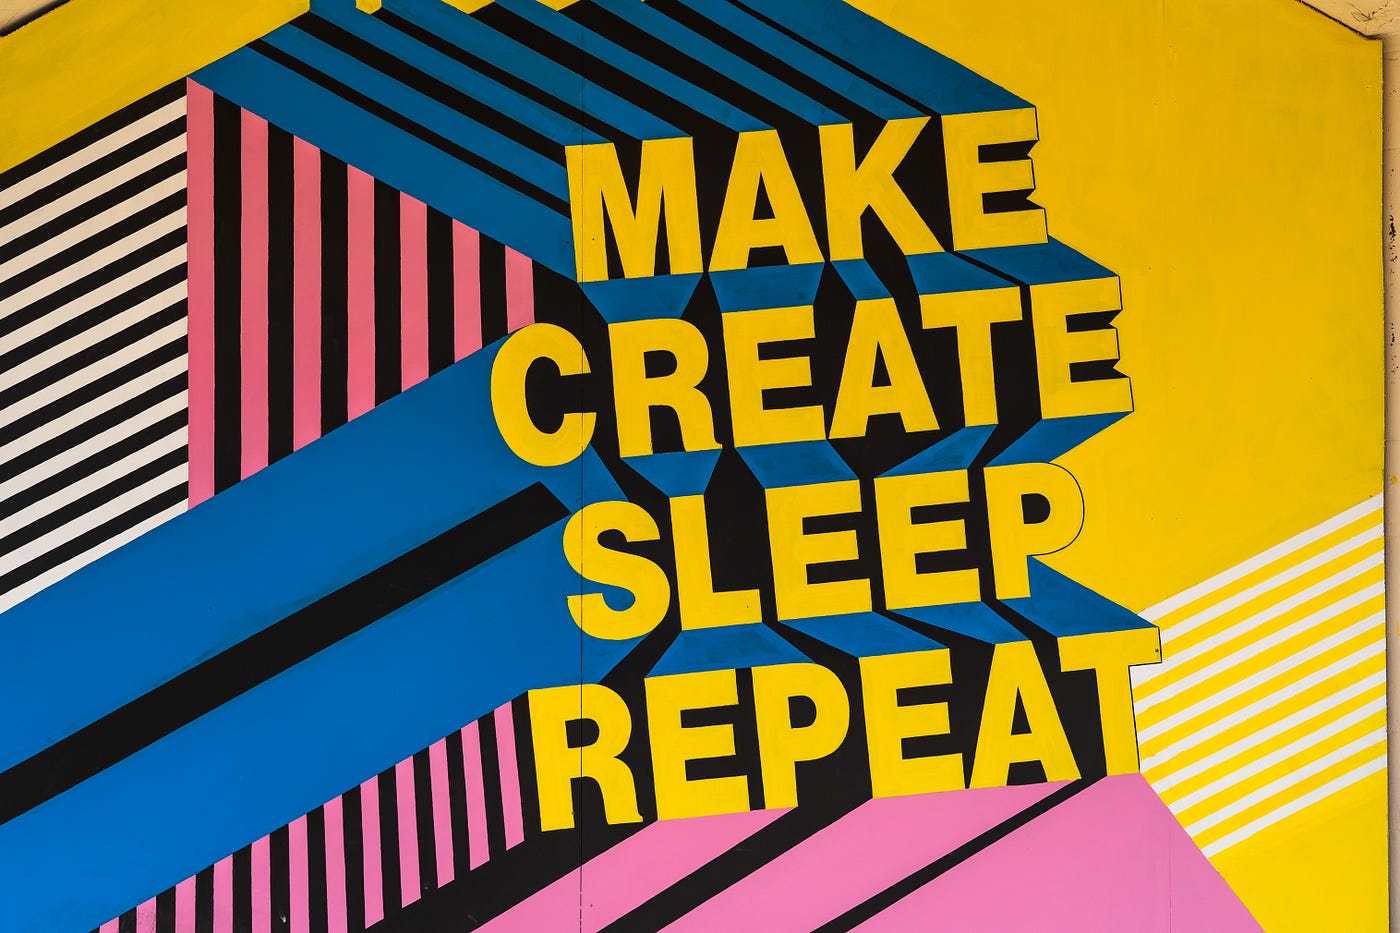 Mural colorido, com grafismos geométricos e escrito “Make. Create. Sleep. Repeat”